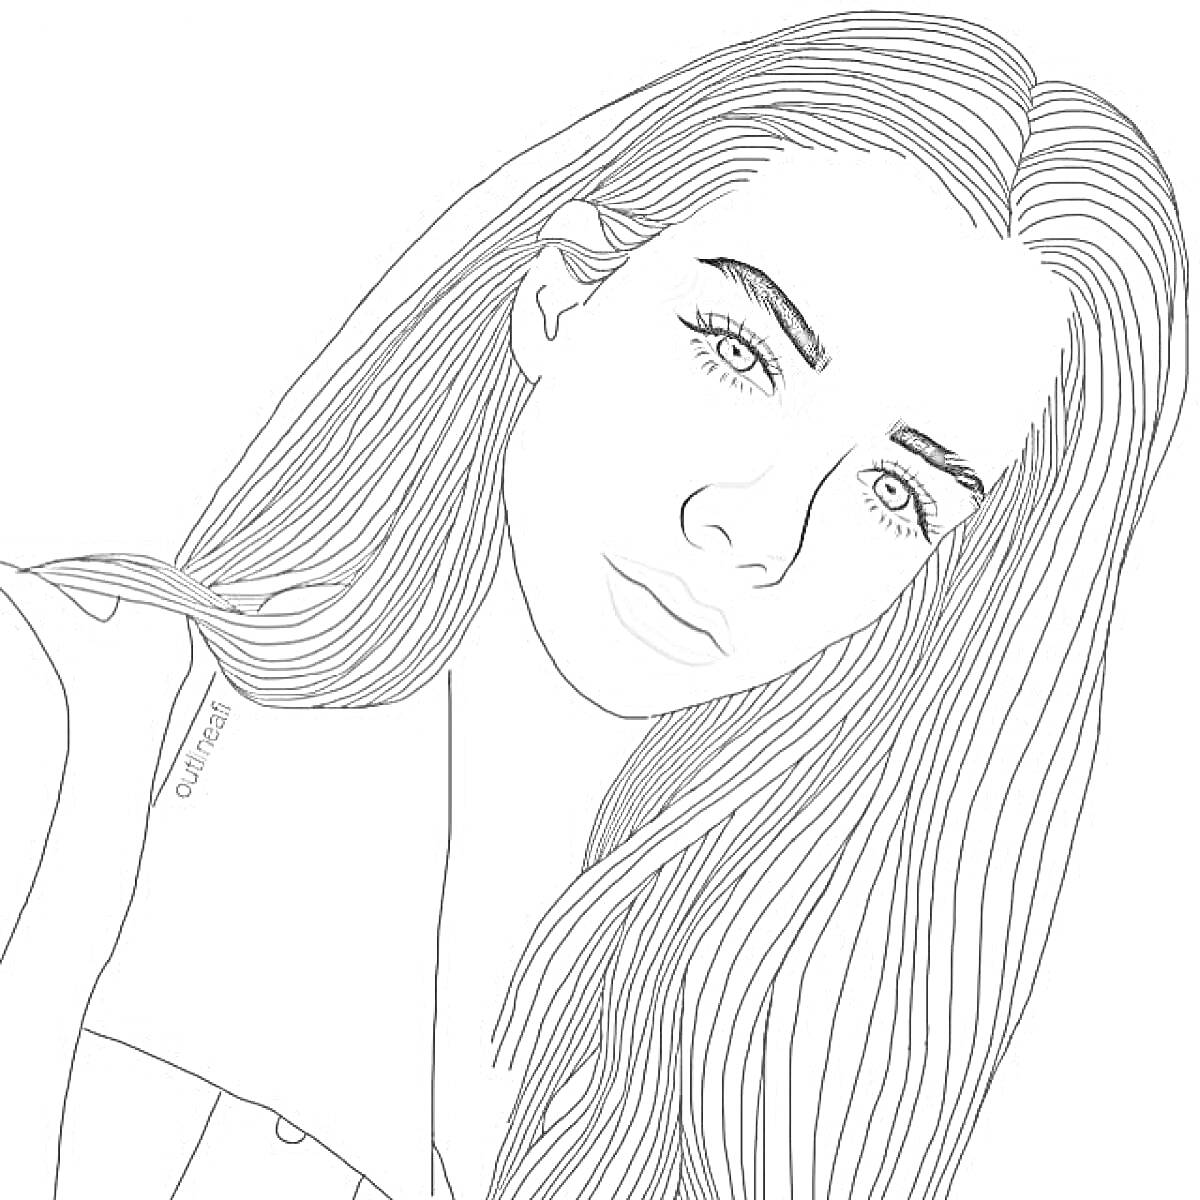 Раскраска Портрет девушки с длинными волосами, с наклоном головы, крупный план